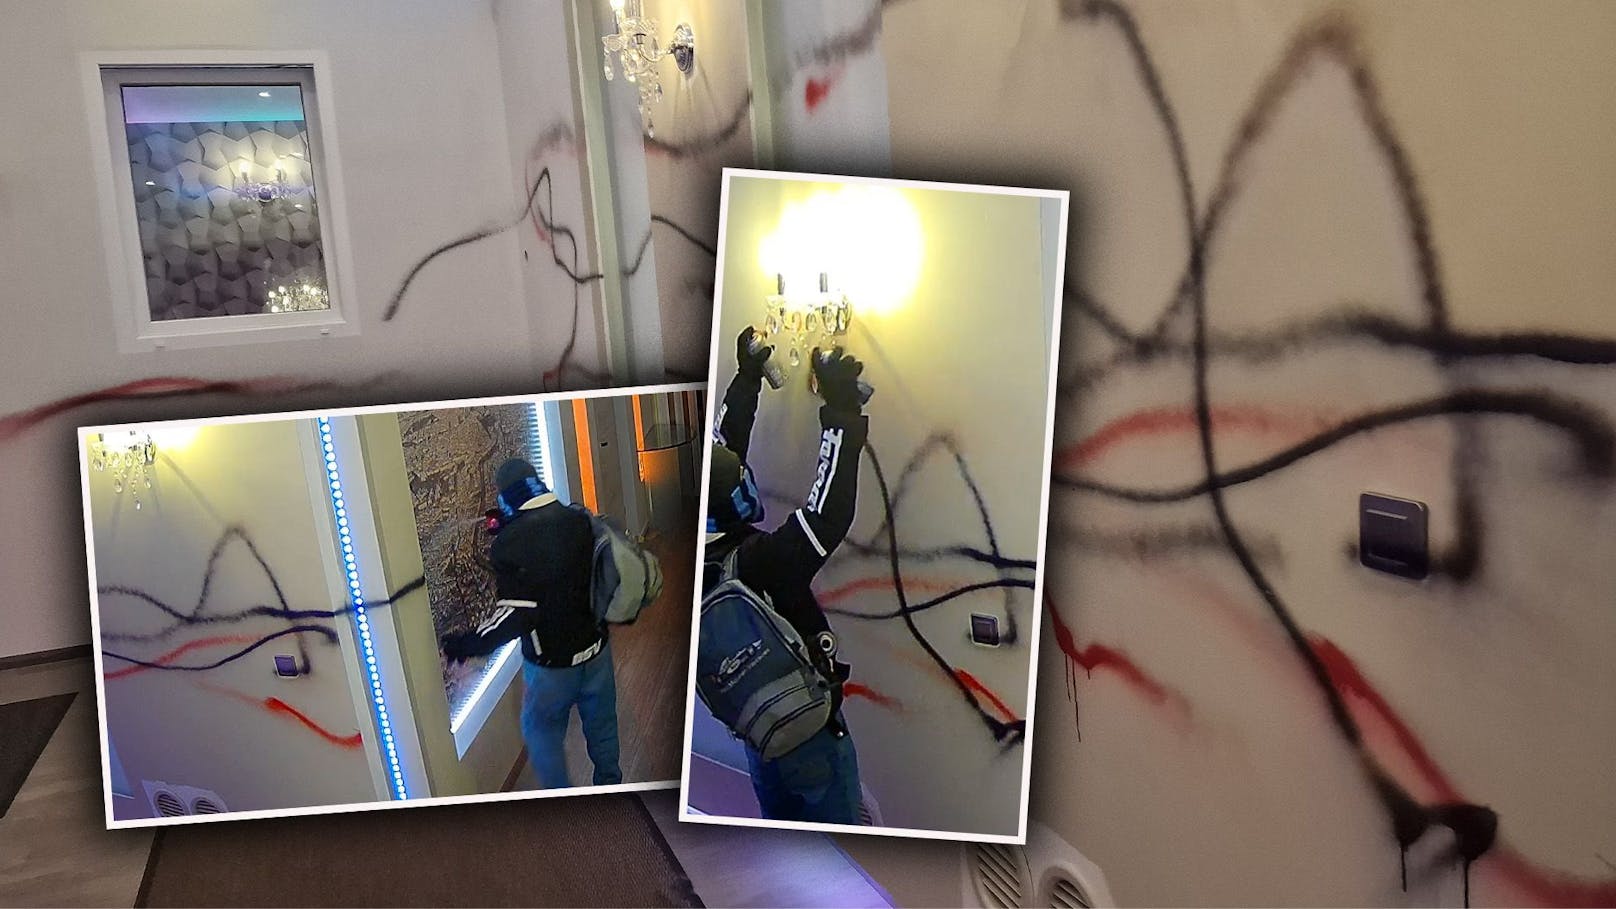 Rowdy beschmiert Foyer eines Wiener Hotels mit Farbe